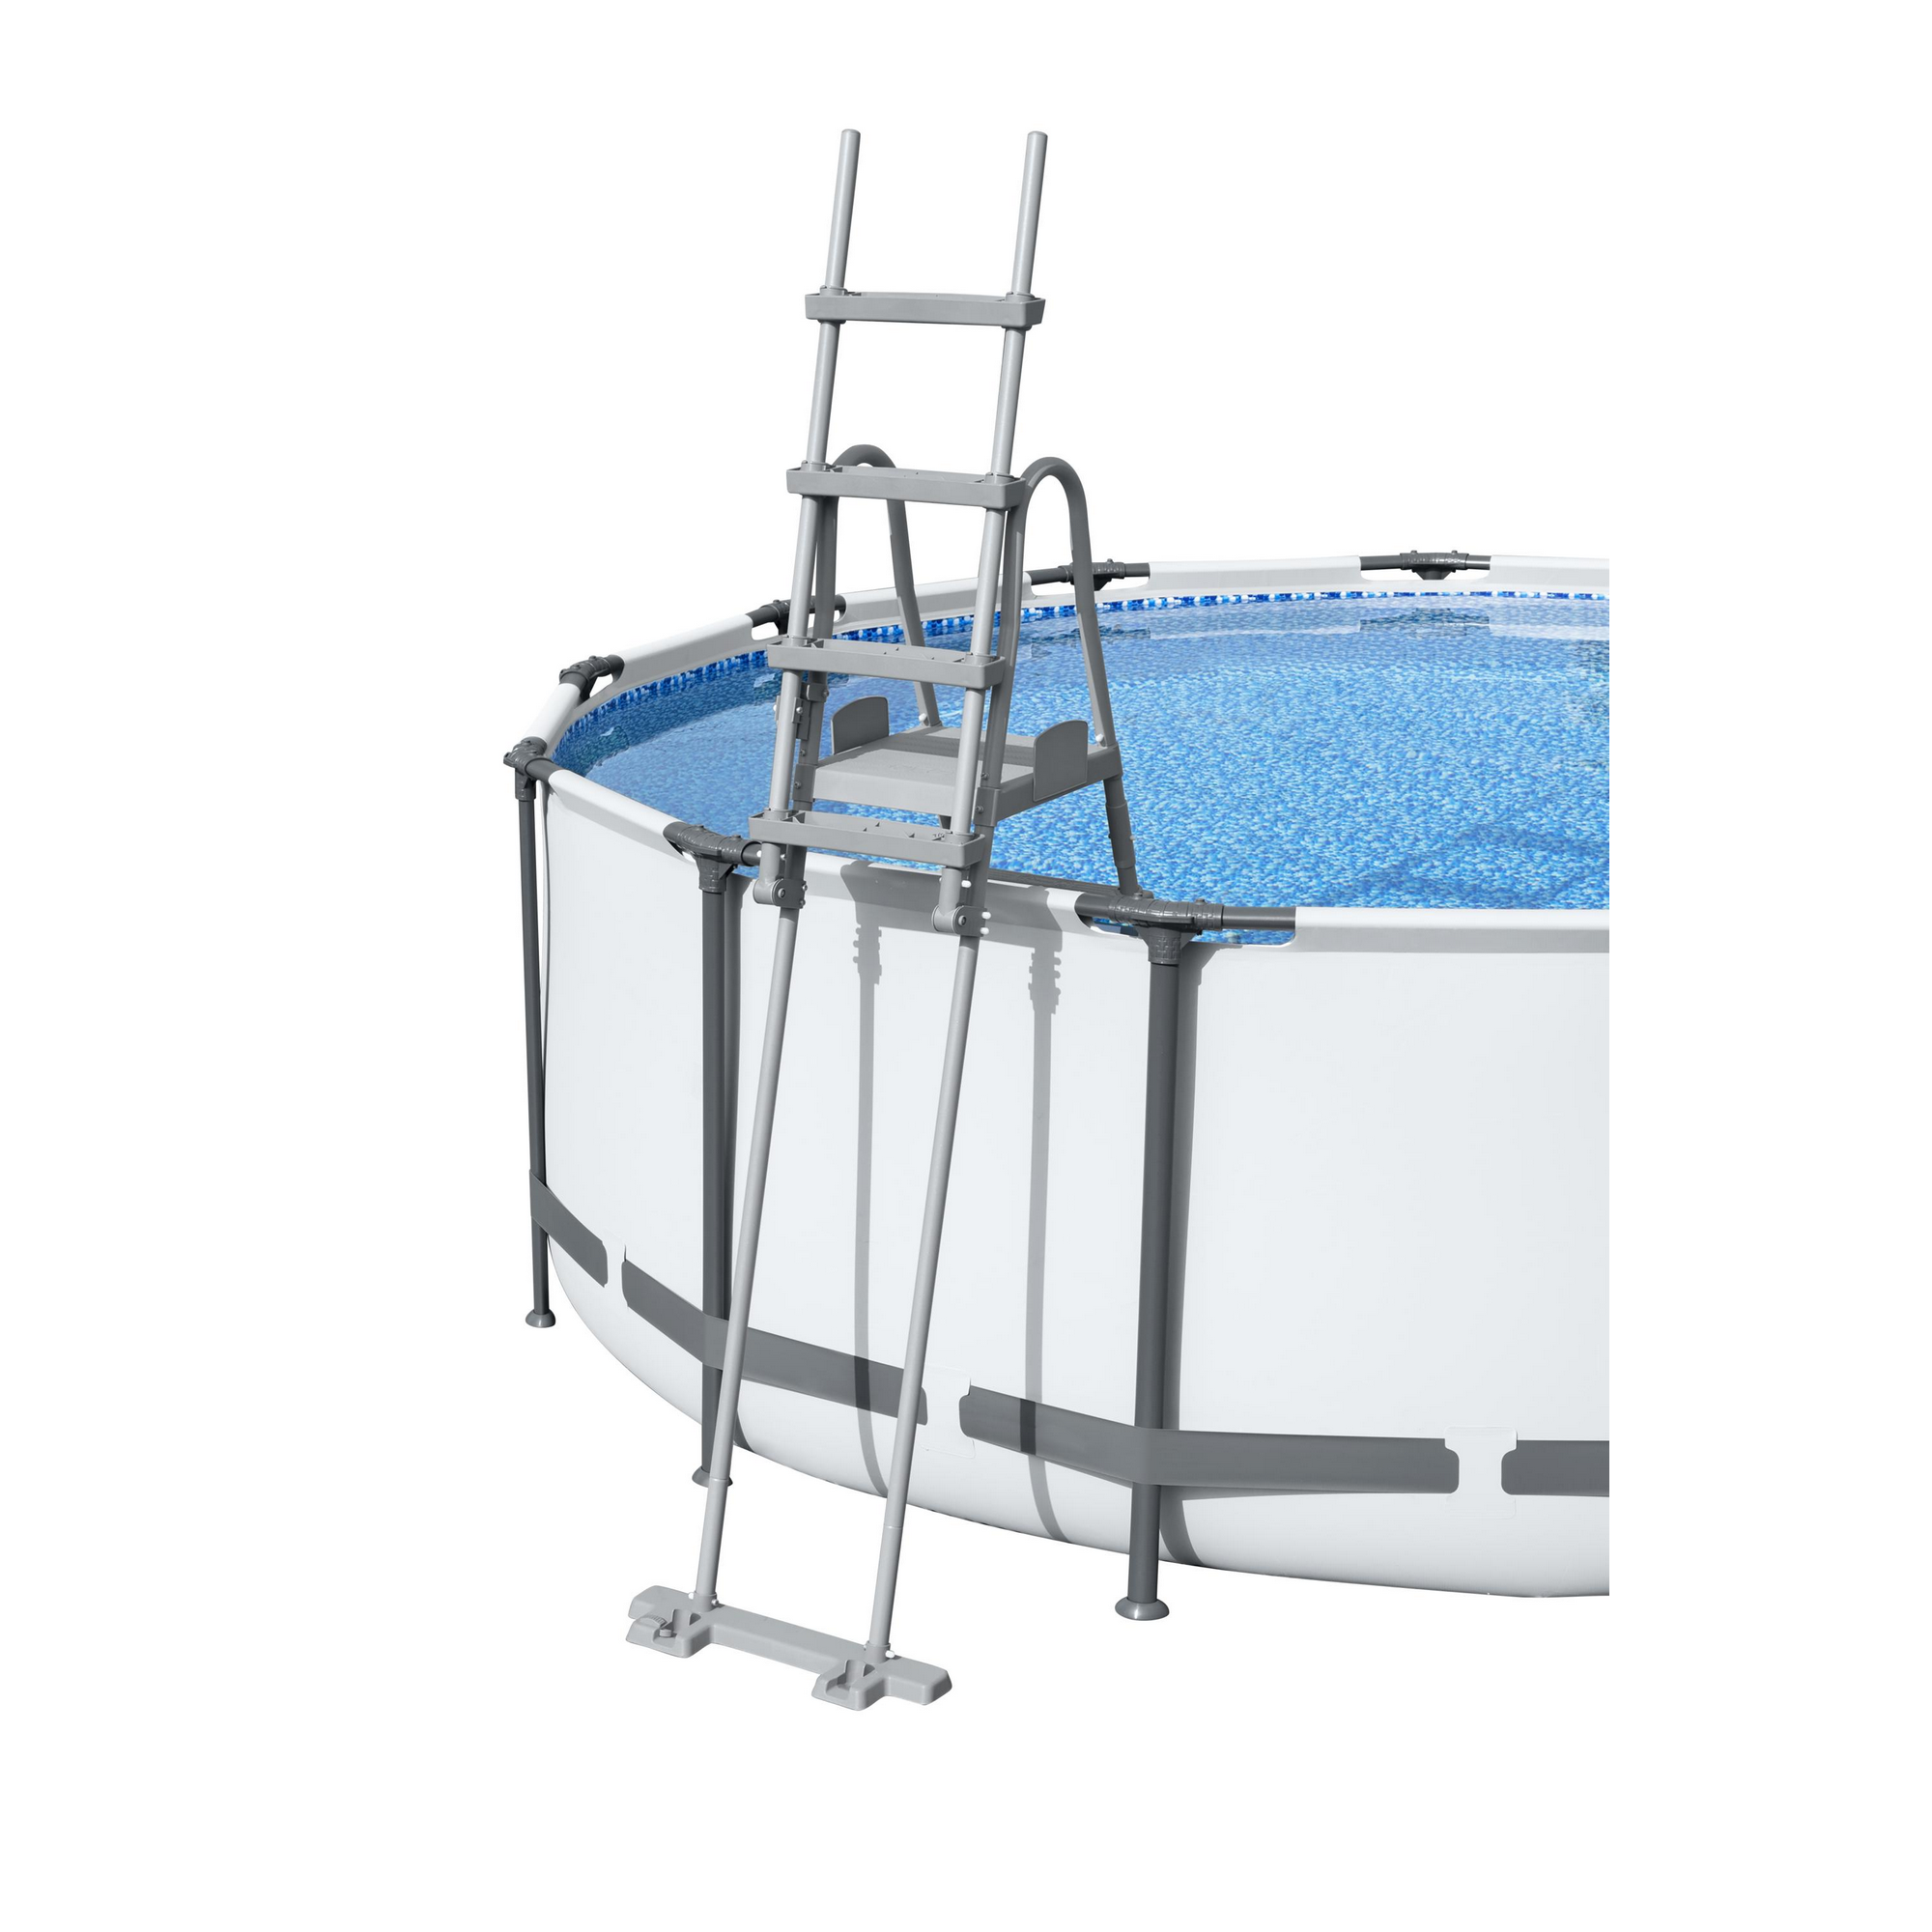 Pool-Sicherheitsleiter 'Flowclear™' Stahl 2 x 4 Stufen, 132 cm + product picture